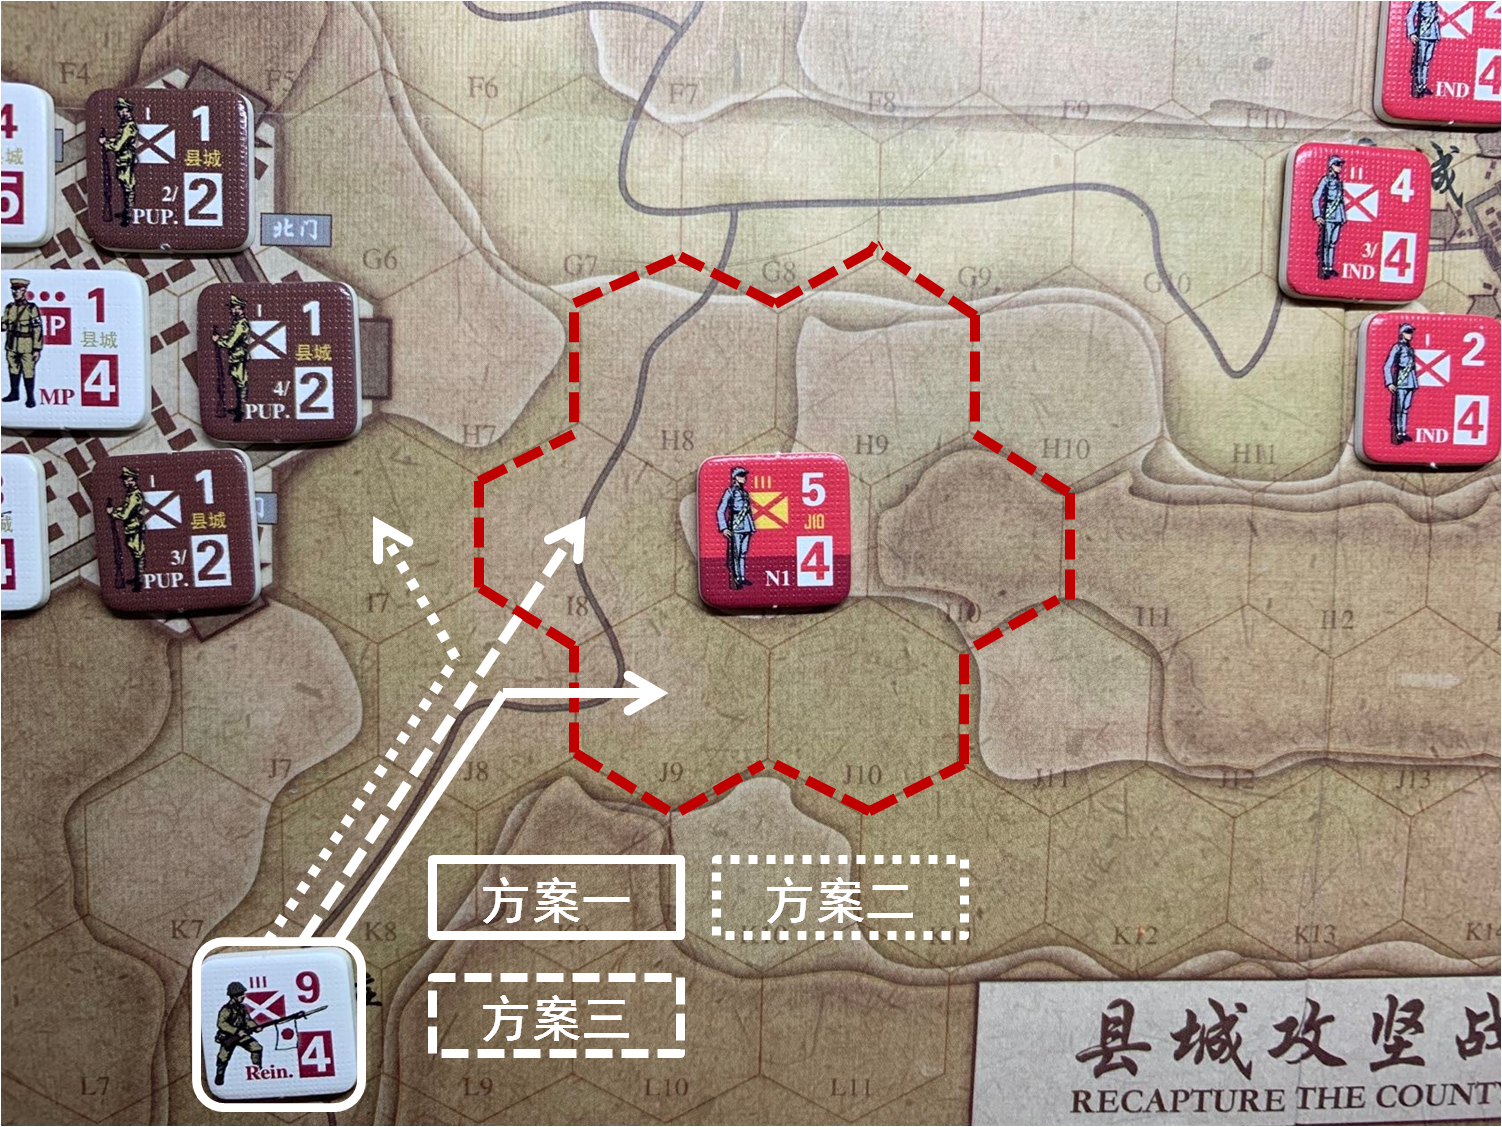 第一回合共軍正規軍部隊N1對於移動命令5的執行結果，及隨後本回合日方移動階段趙莊方向日軍增援部隊可能的移動方案